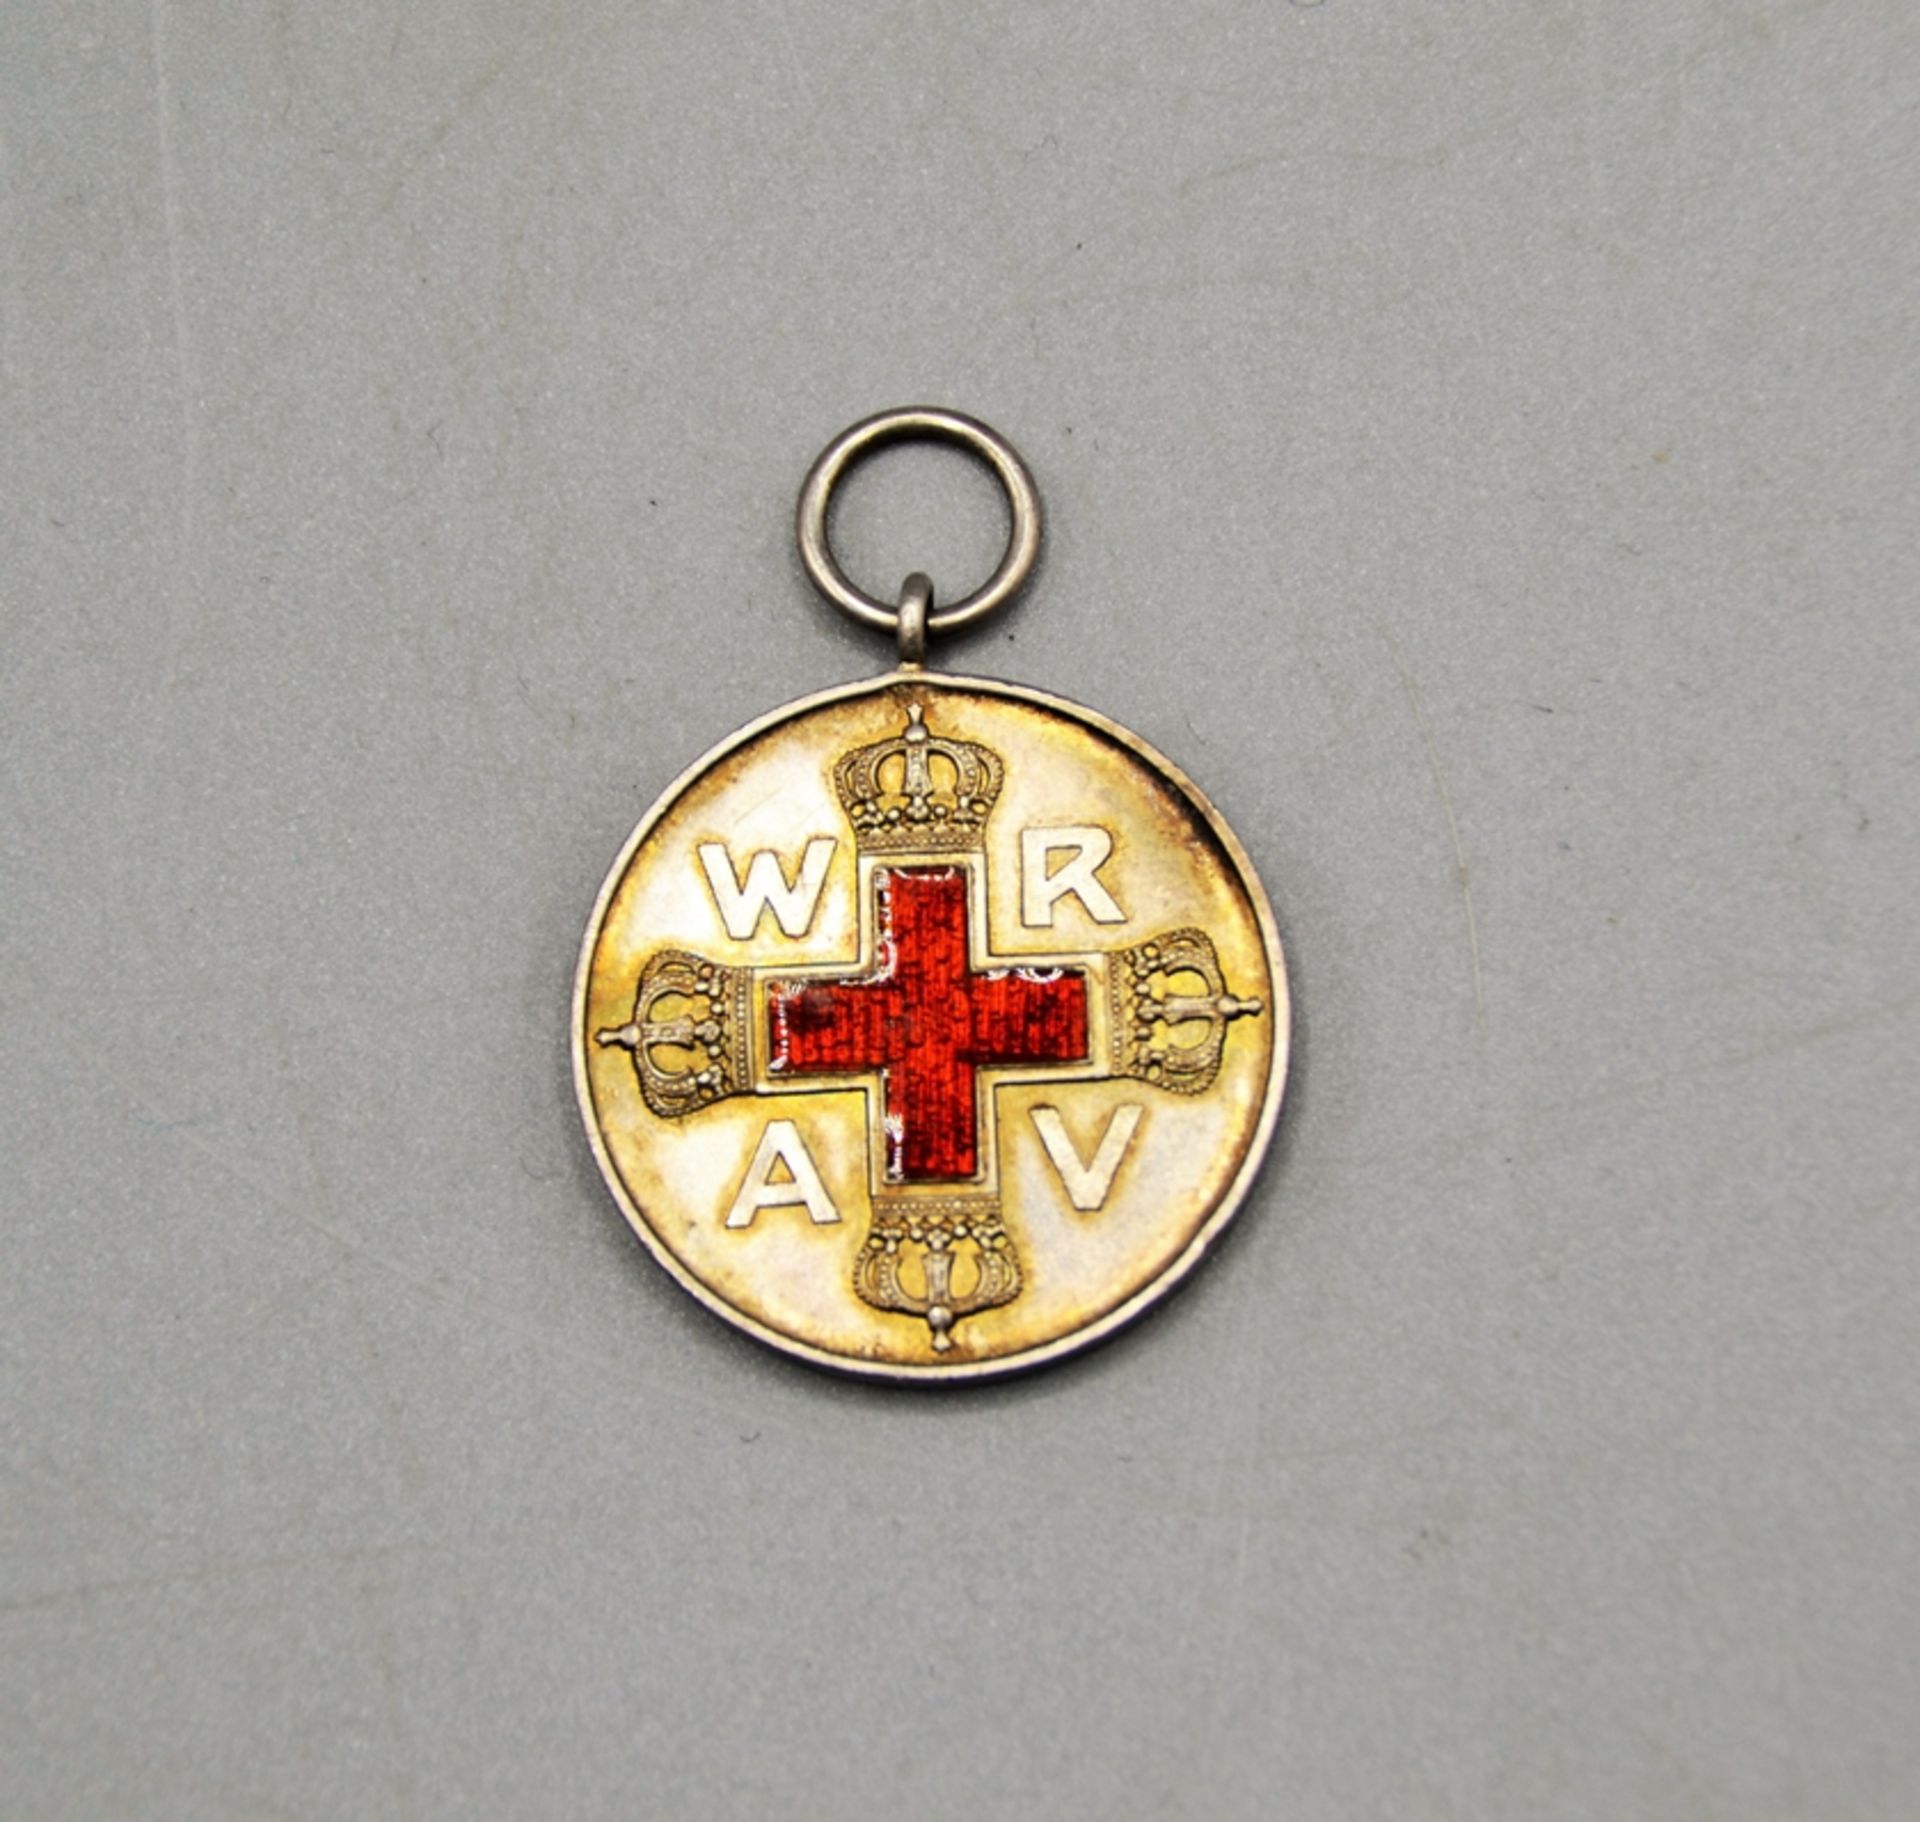 Rote Kreuz Medaille 2. Klasse 1898 Ehrenzeichen Orden, Silber teils emailliert, minimale Bestossung